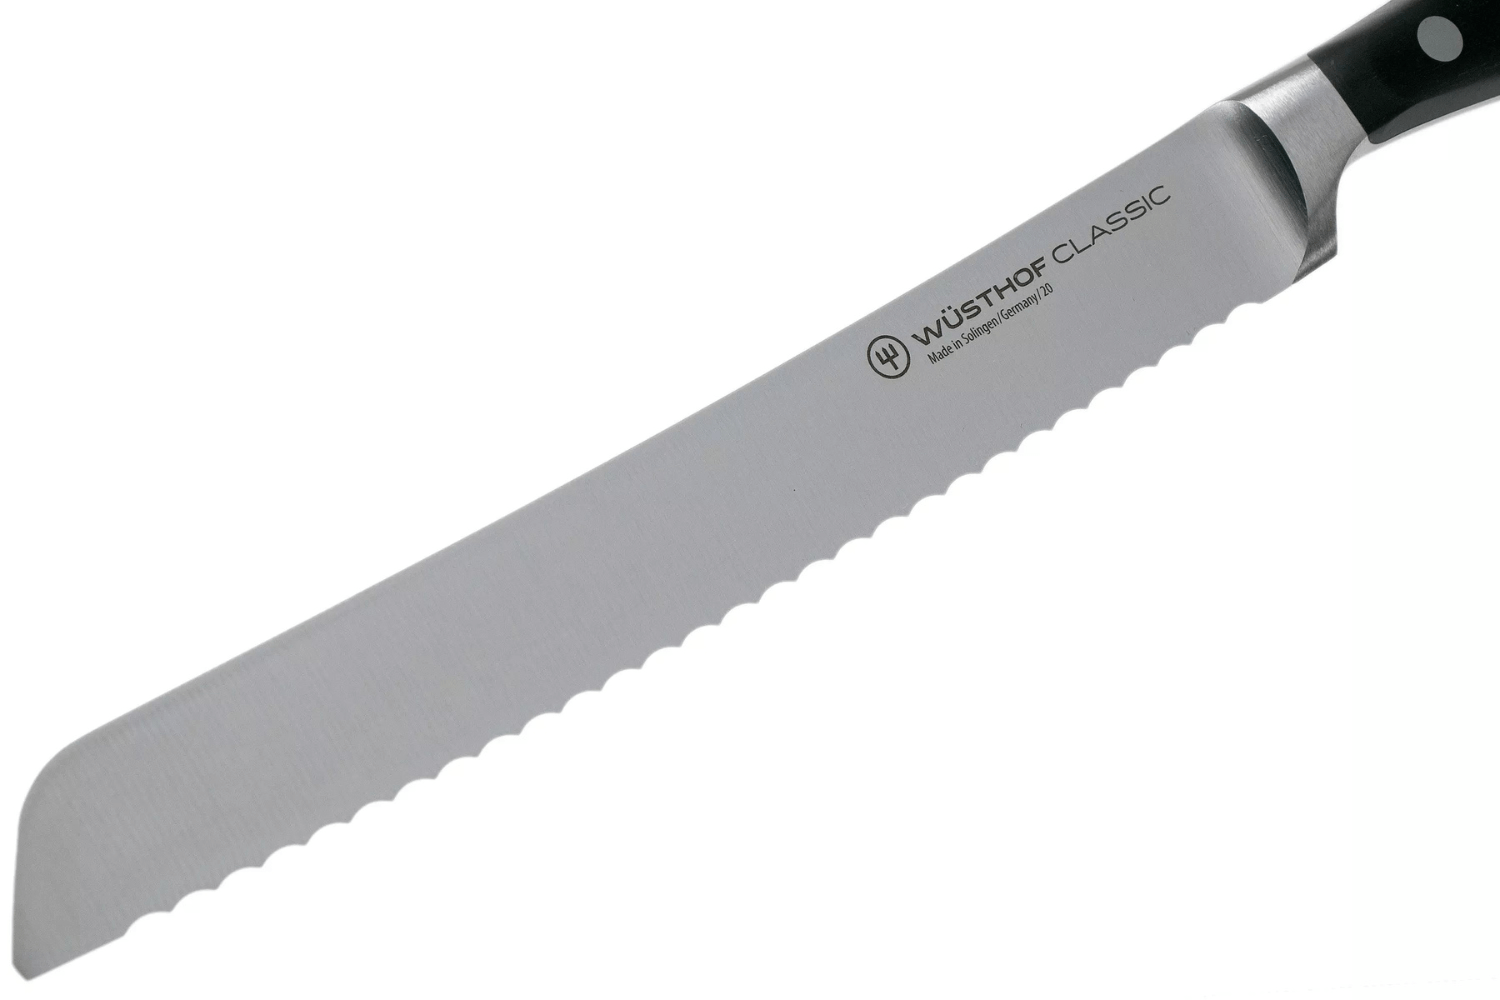 Wusthof Classic couteau à pain forgé 20cm